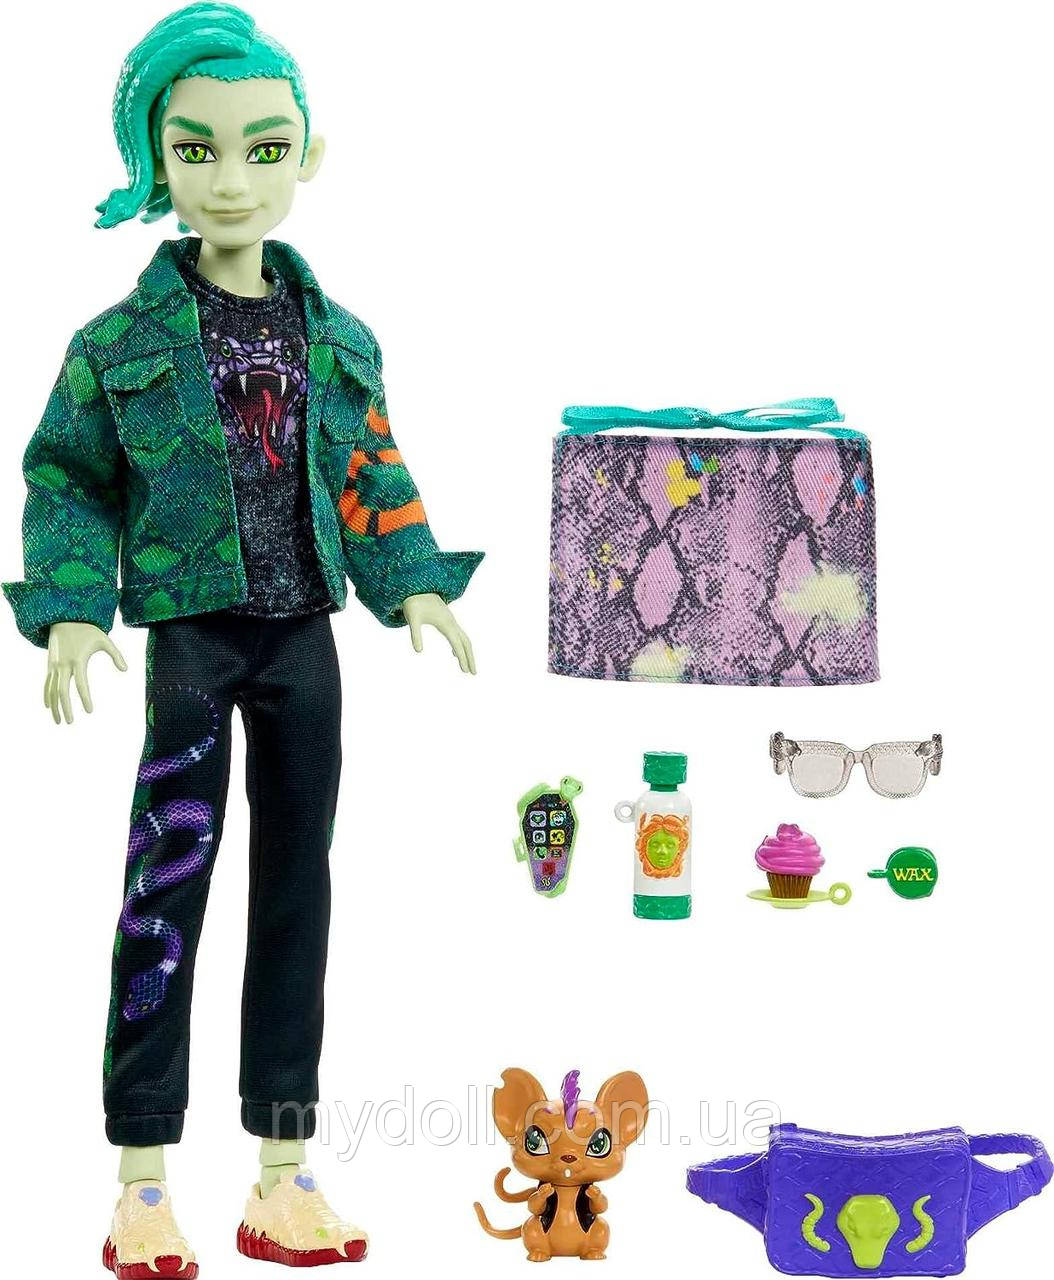 Лялька Монстер Хай Дьюс Горгон Monster High Deuce Gorgon Posable Doll HHK56 Mattel Оригінал